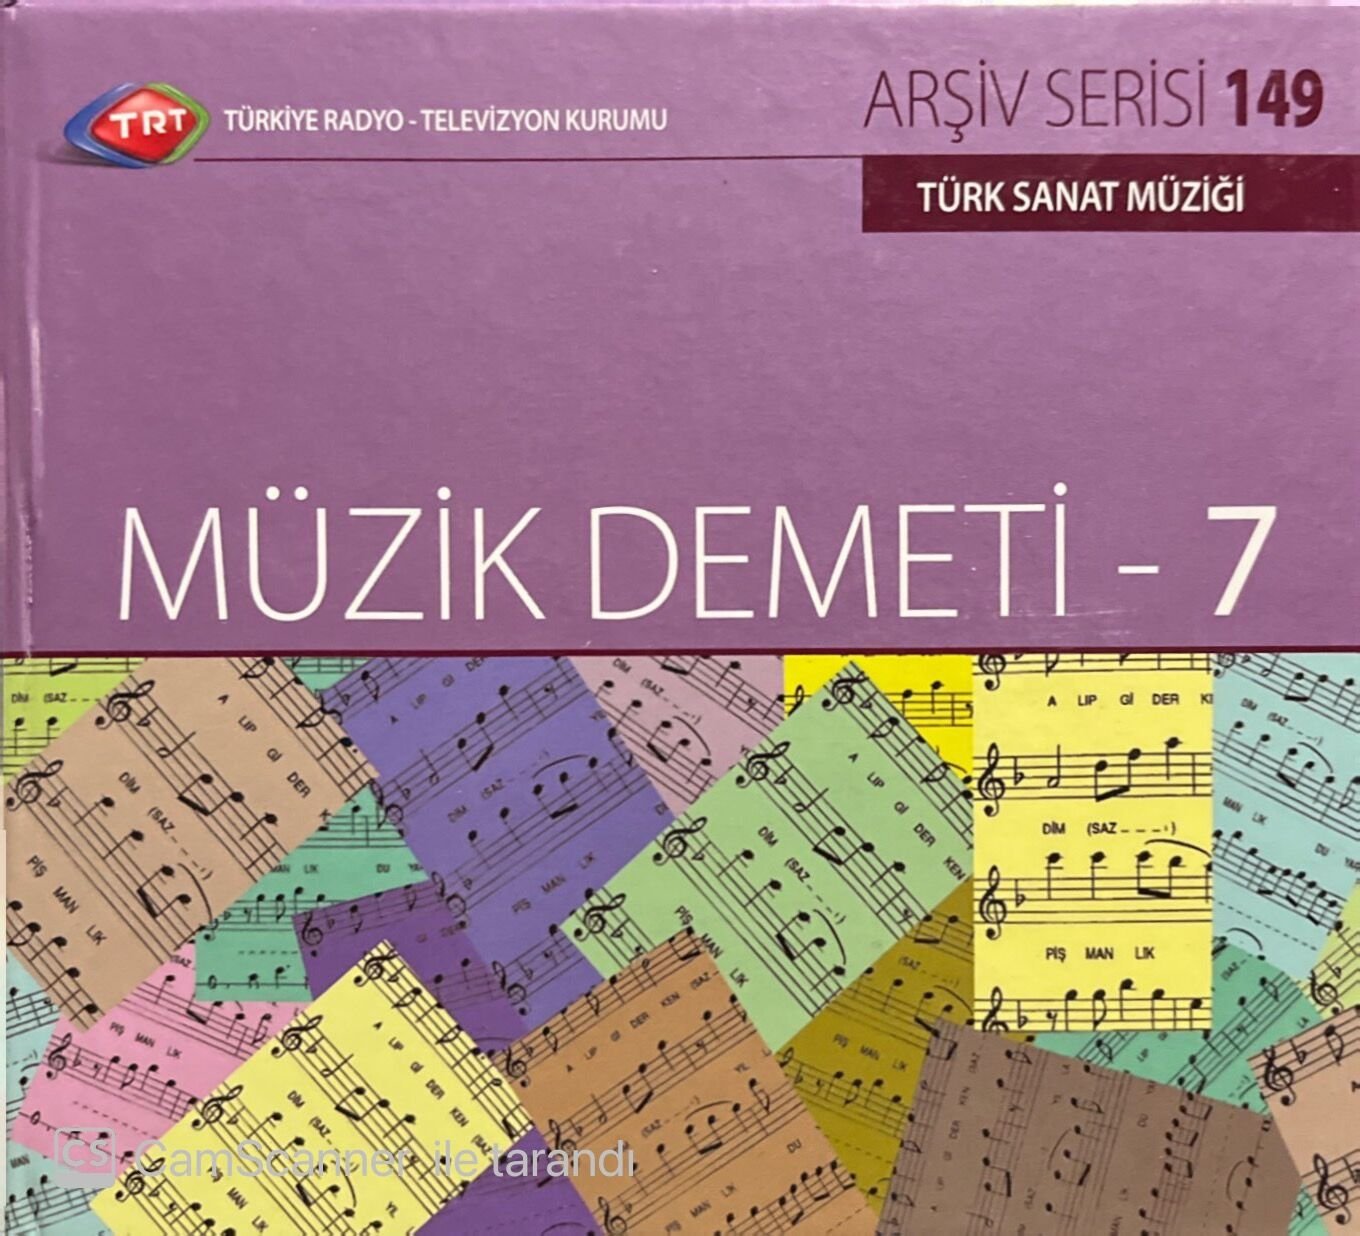 TRT Arşiv Serisi 149 Müzik Demeti - 7 CD